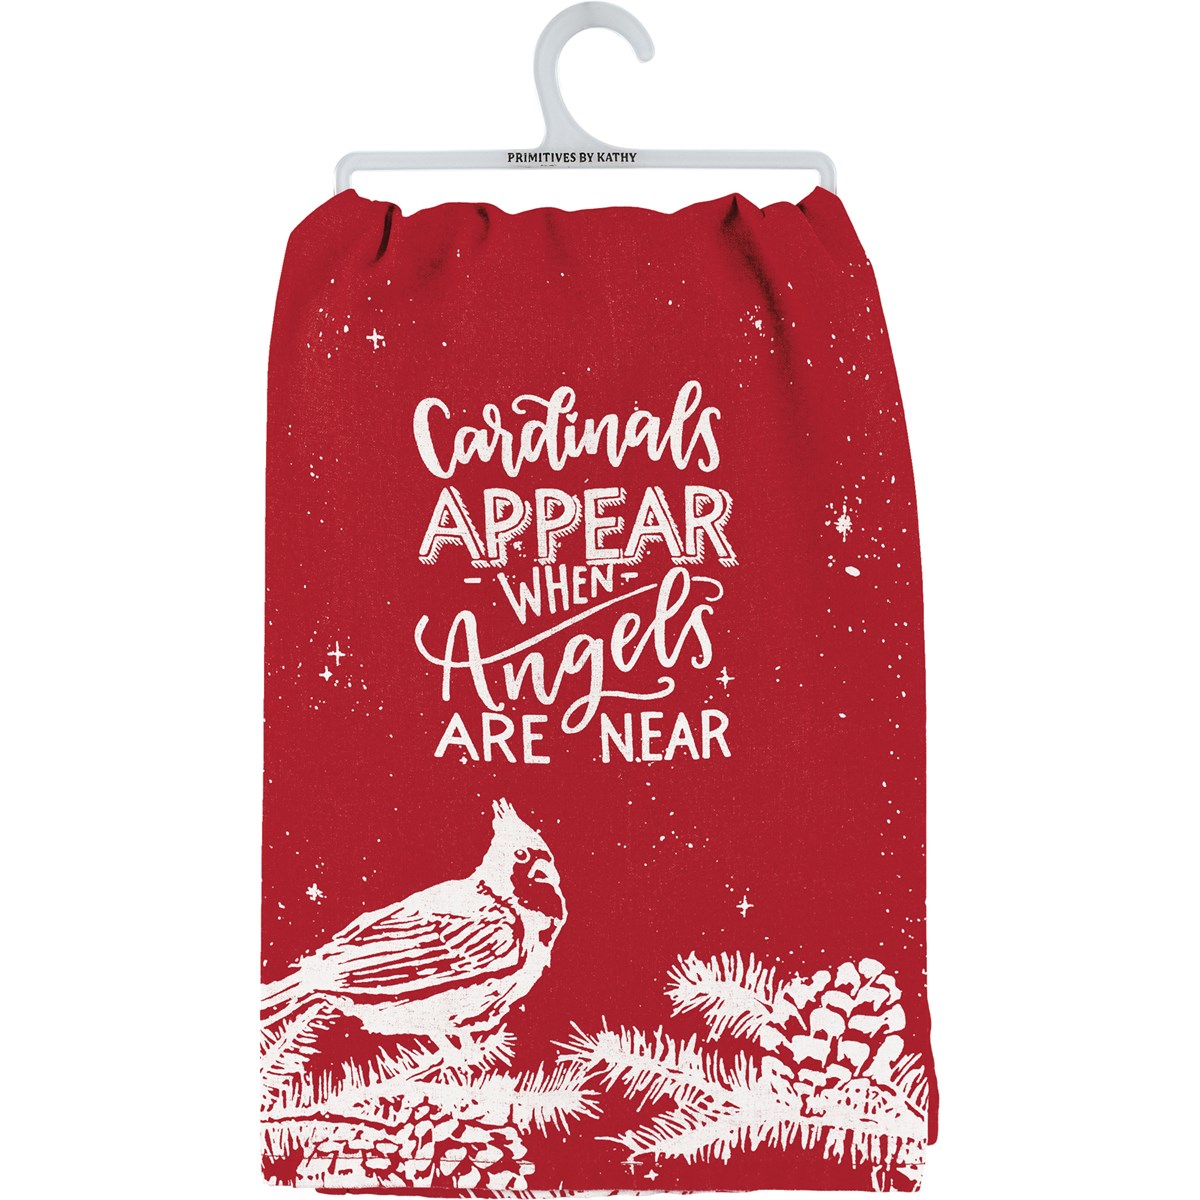 Cardinals Appear Kitchen Towel - Cotton